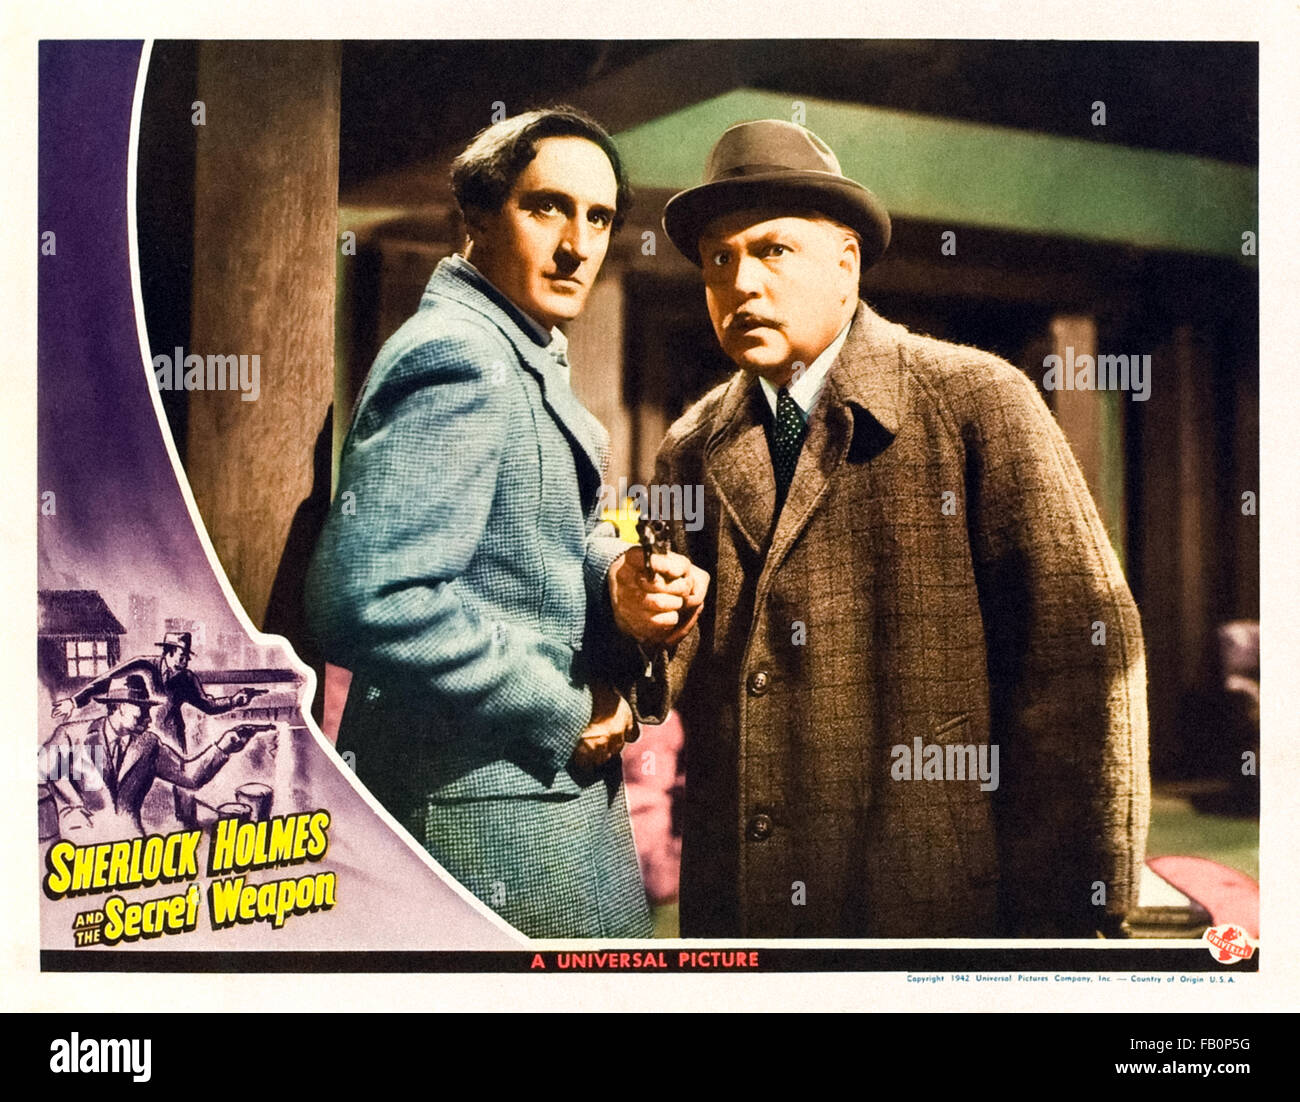 Carte Hall pour Sherlock Holmes et l'arme secrète" 1942 film Sherlock Holmes réalisé par Roy William Neill et avec Basil Rathbone (Holmes) et Nigel Bruce (Watson). Banque D'Images